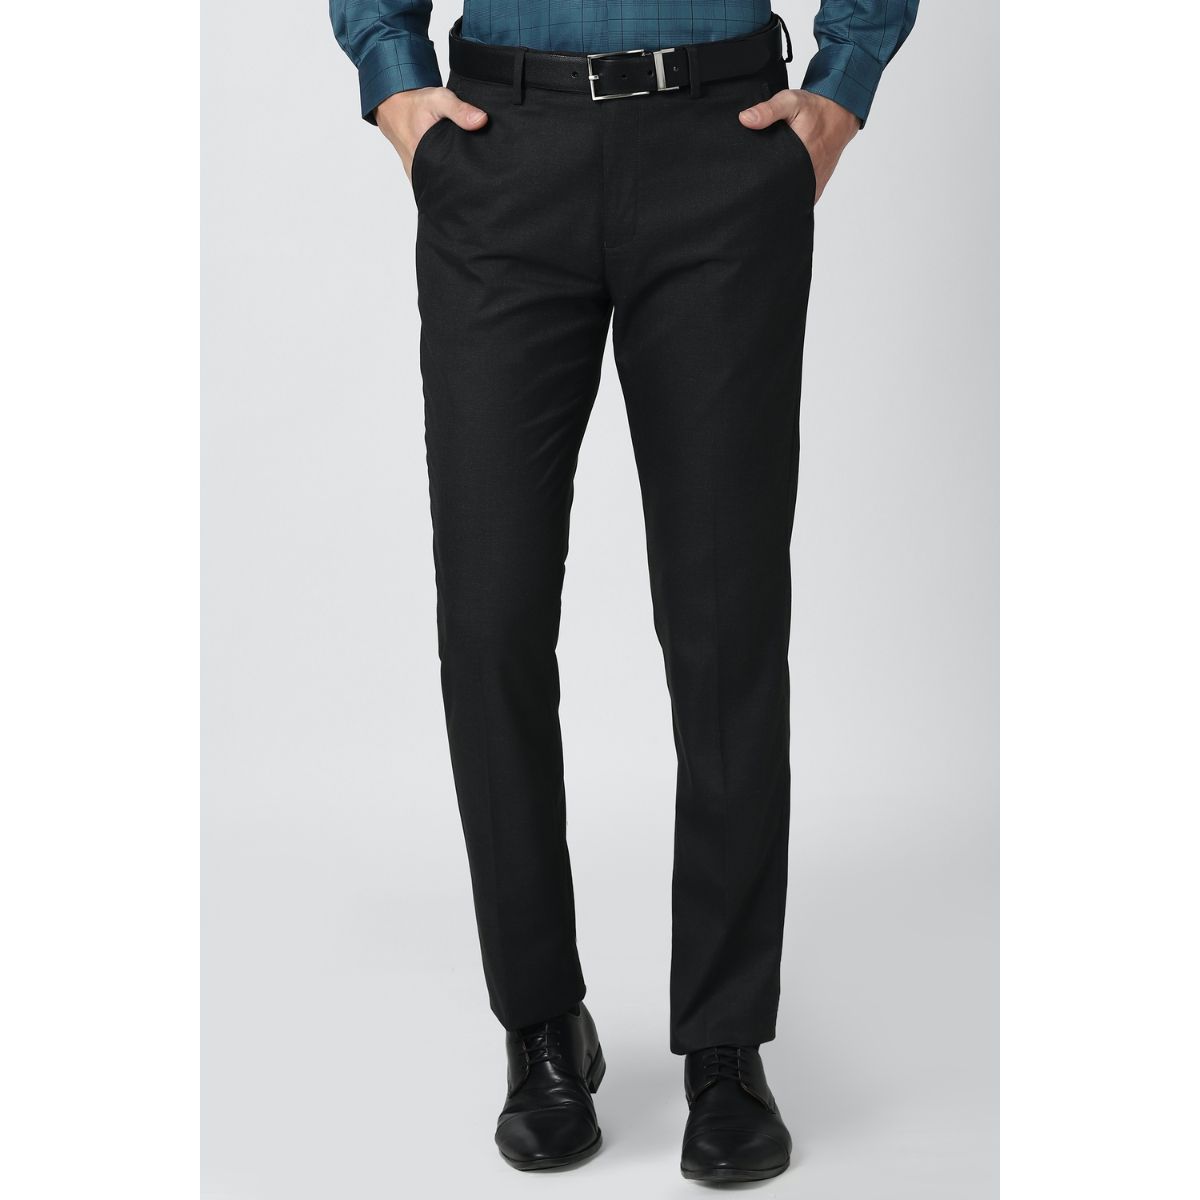 Buy Pesado Men Solid Black Formal Trousers Online at Best Prices in India -  JioMart.